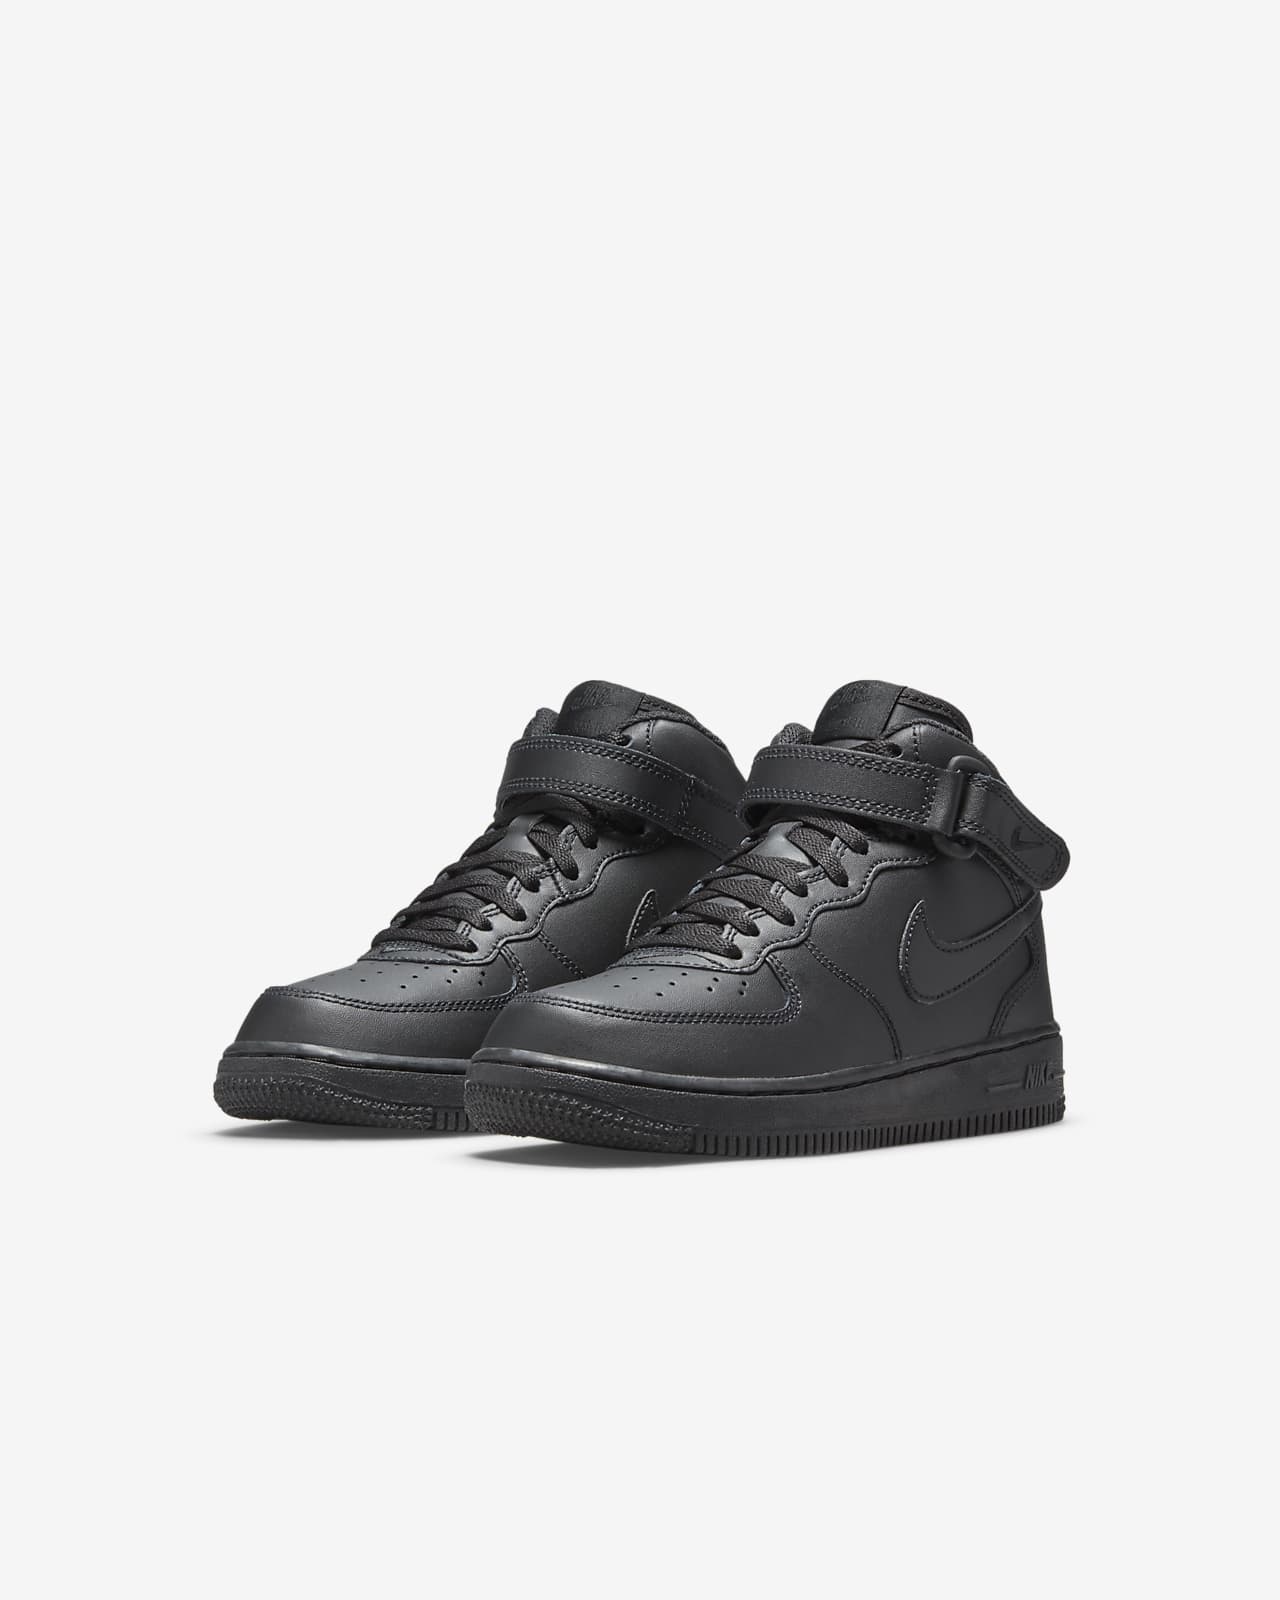 Nike Force 1 Little Kids' Shoe Size 10.5, Black